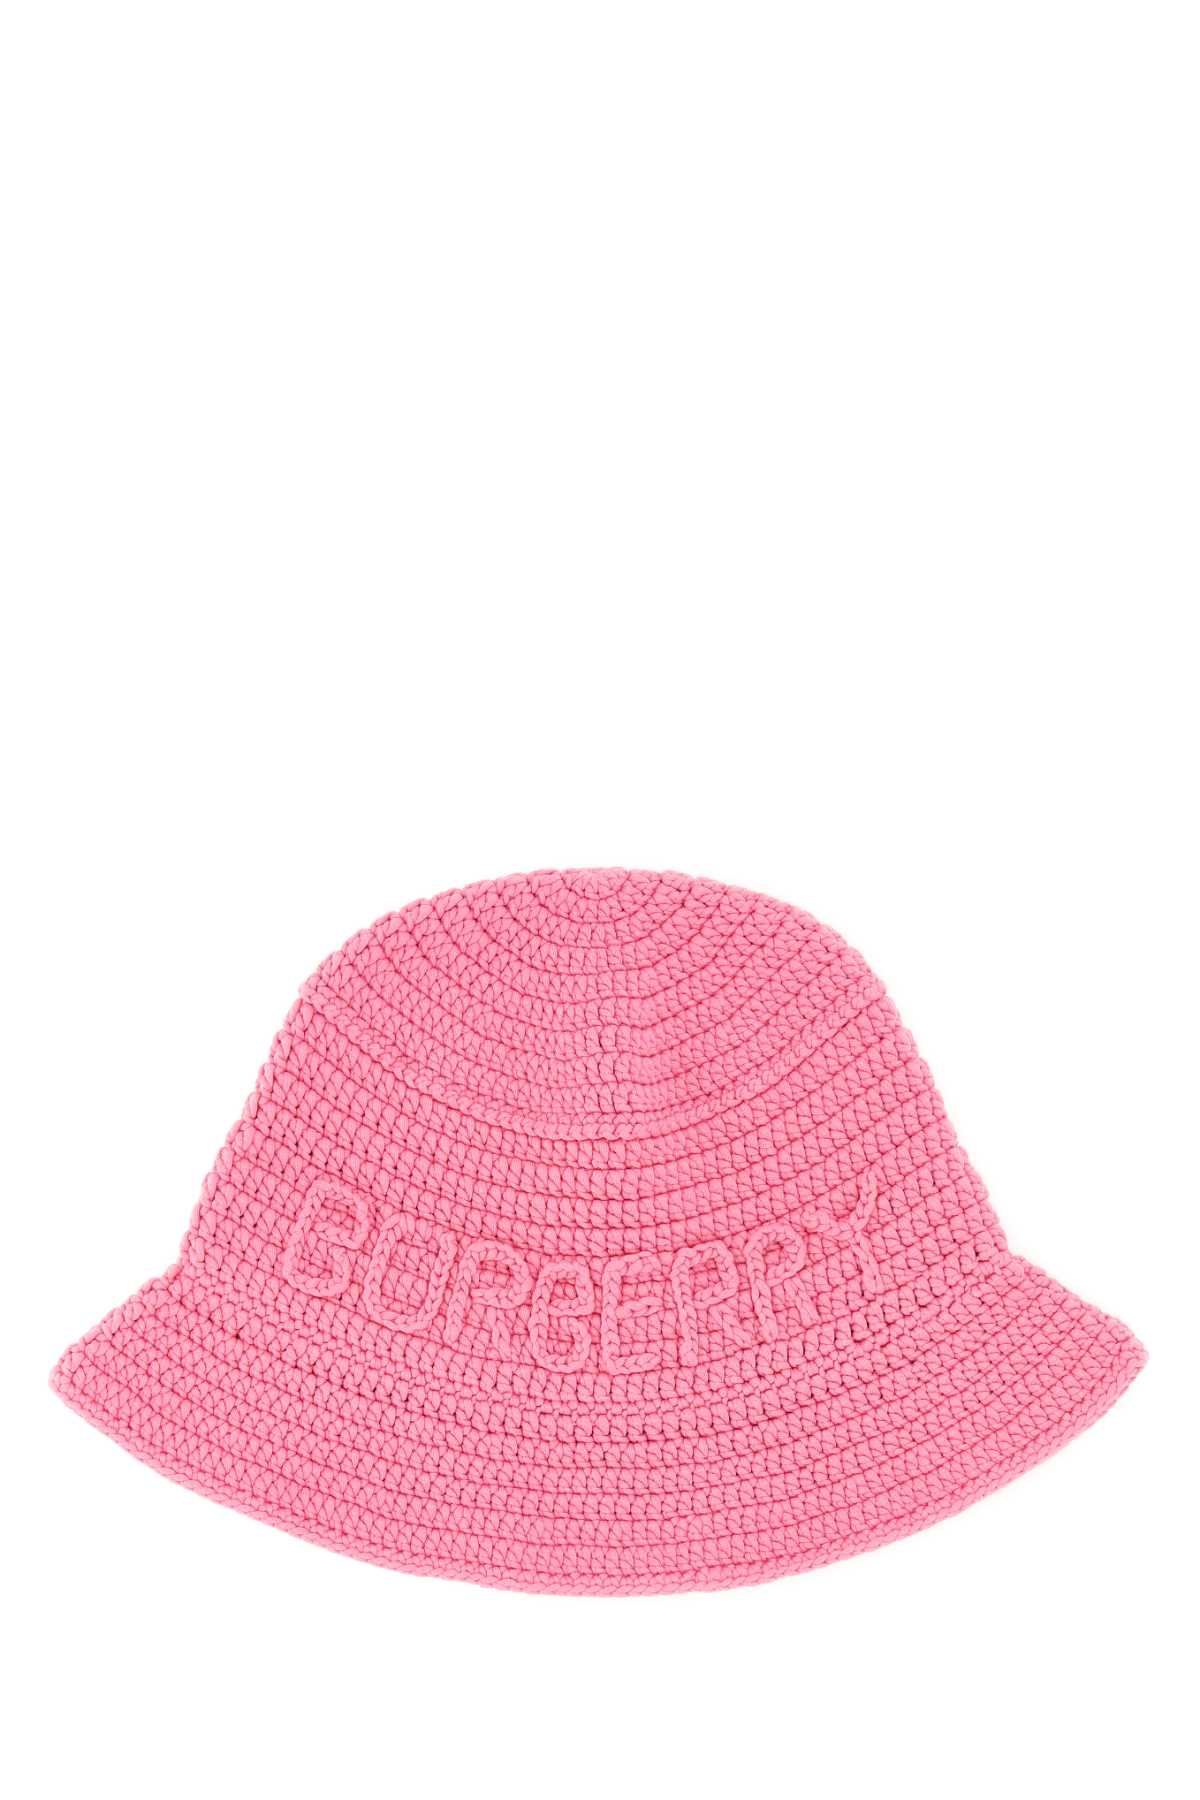 Pink Crochet Bucket Hat